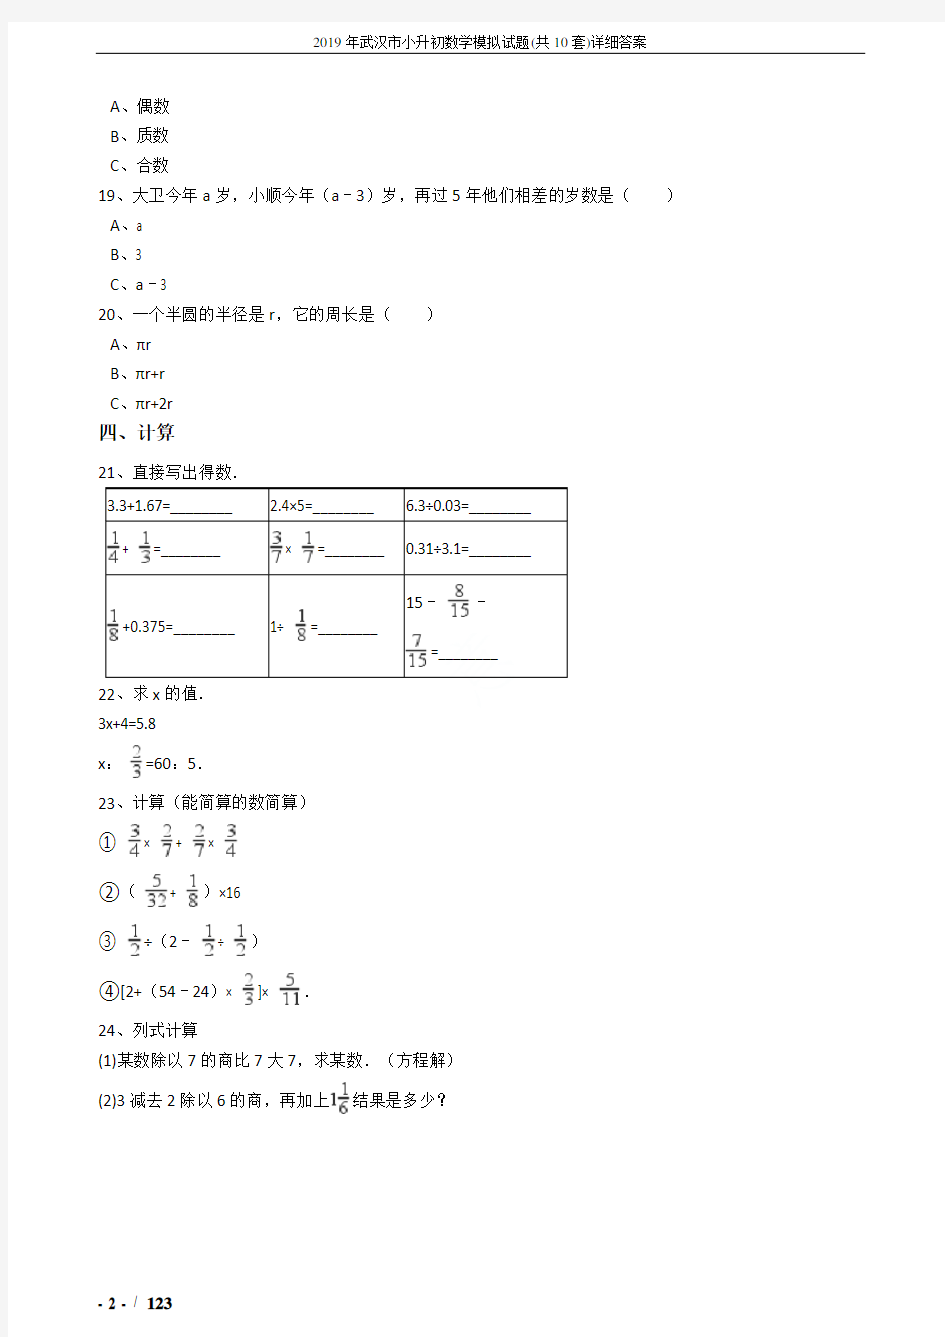 2019年武汉市小升初数学模拟试题(共10套)详细答案